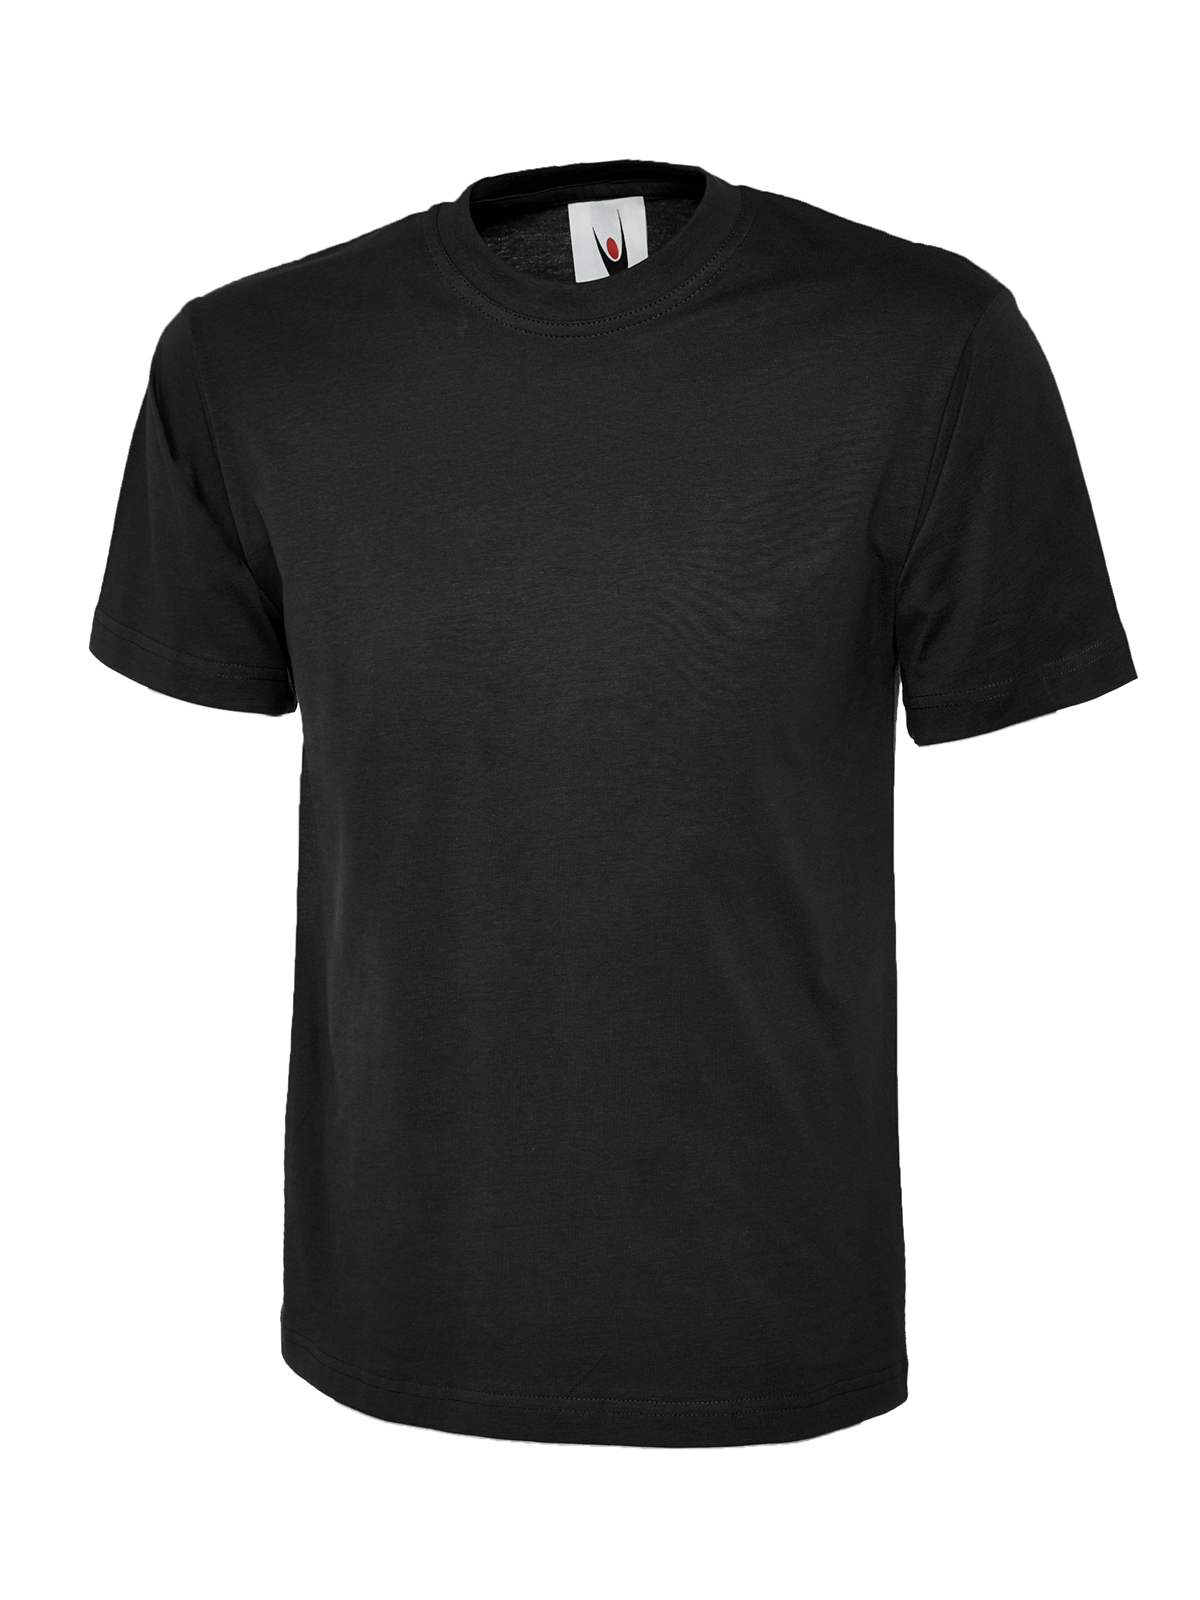 Uc301 180gsm classic t-shirt - black - 4xl